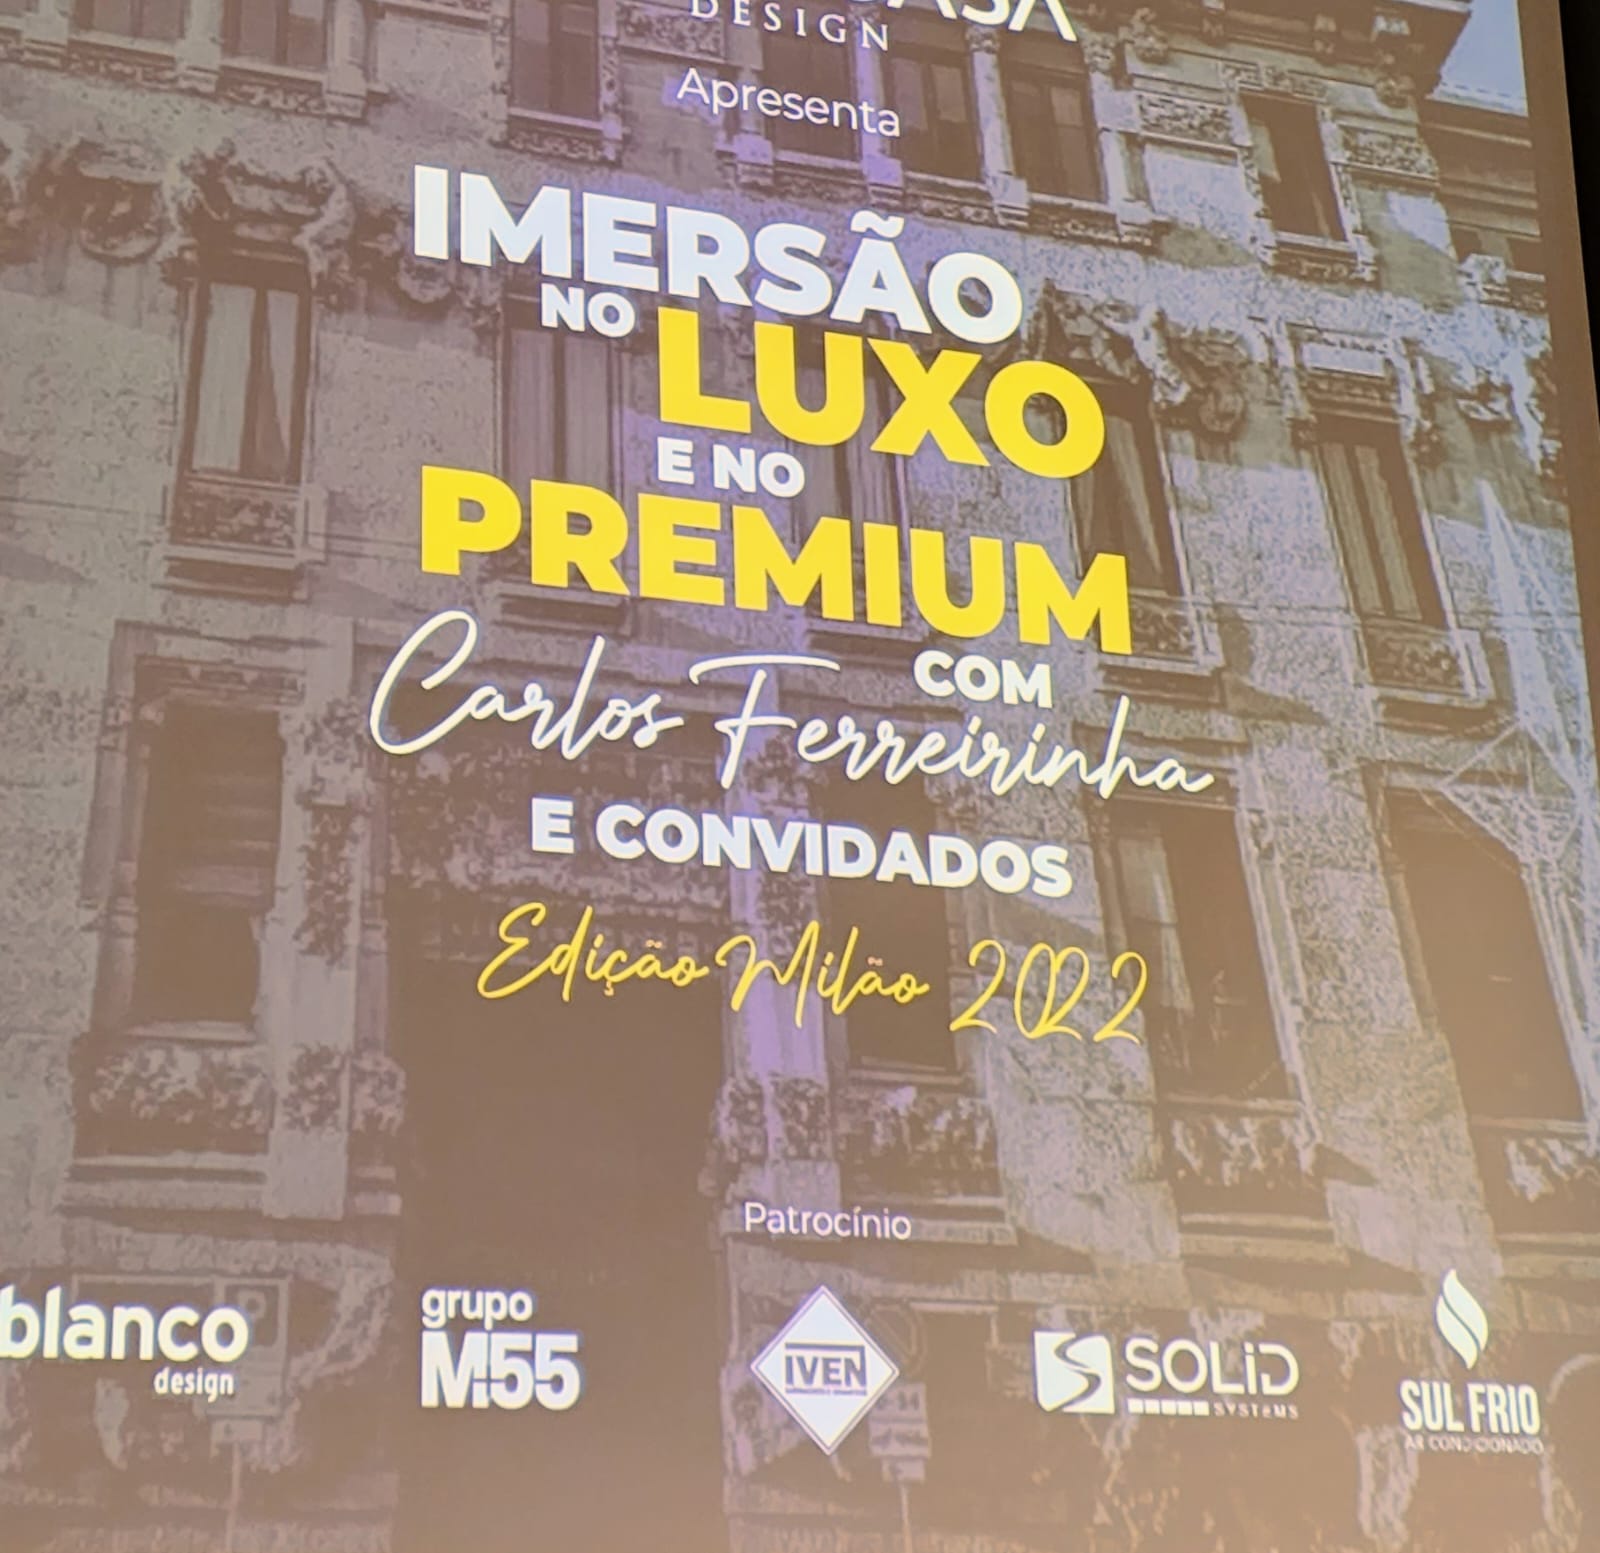 Tudo sobre o evento "Imersão no Luxo e no Premium", patrocinado pela Solid na Itália!